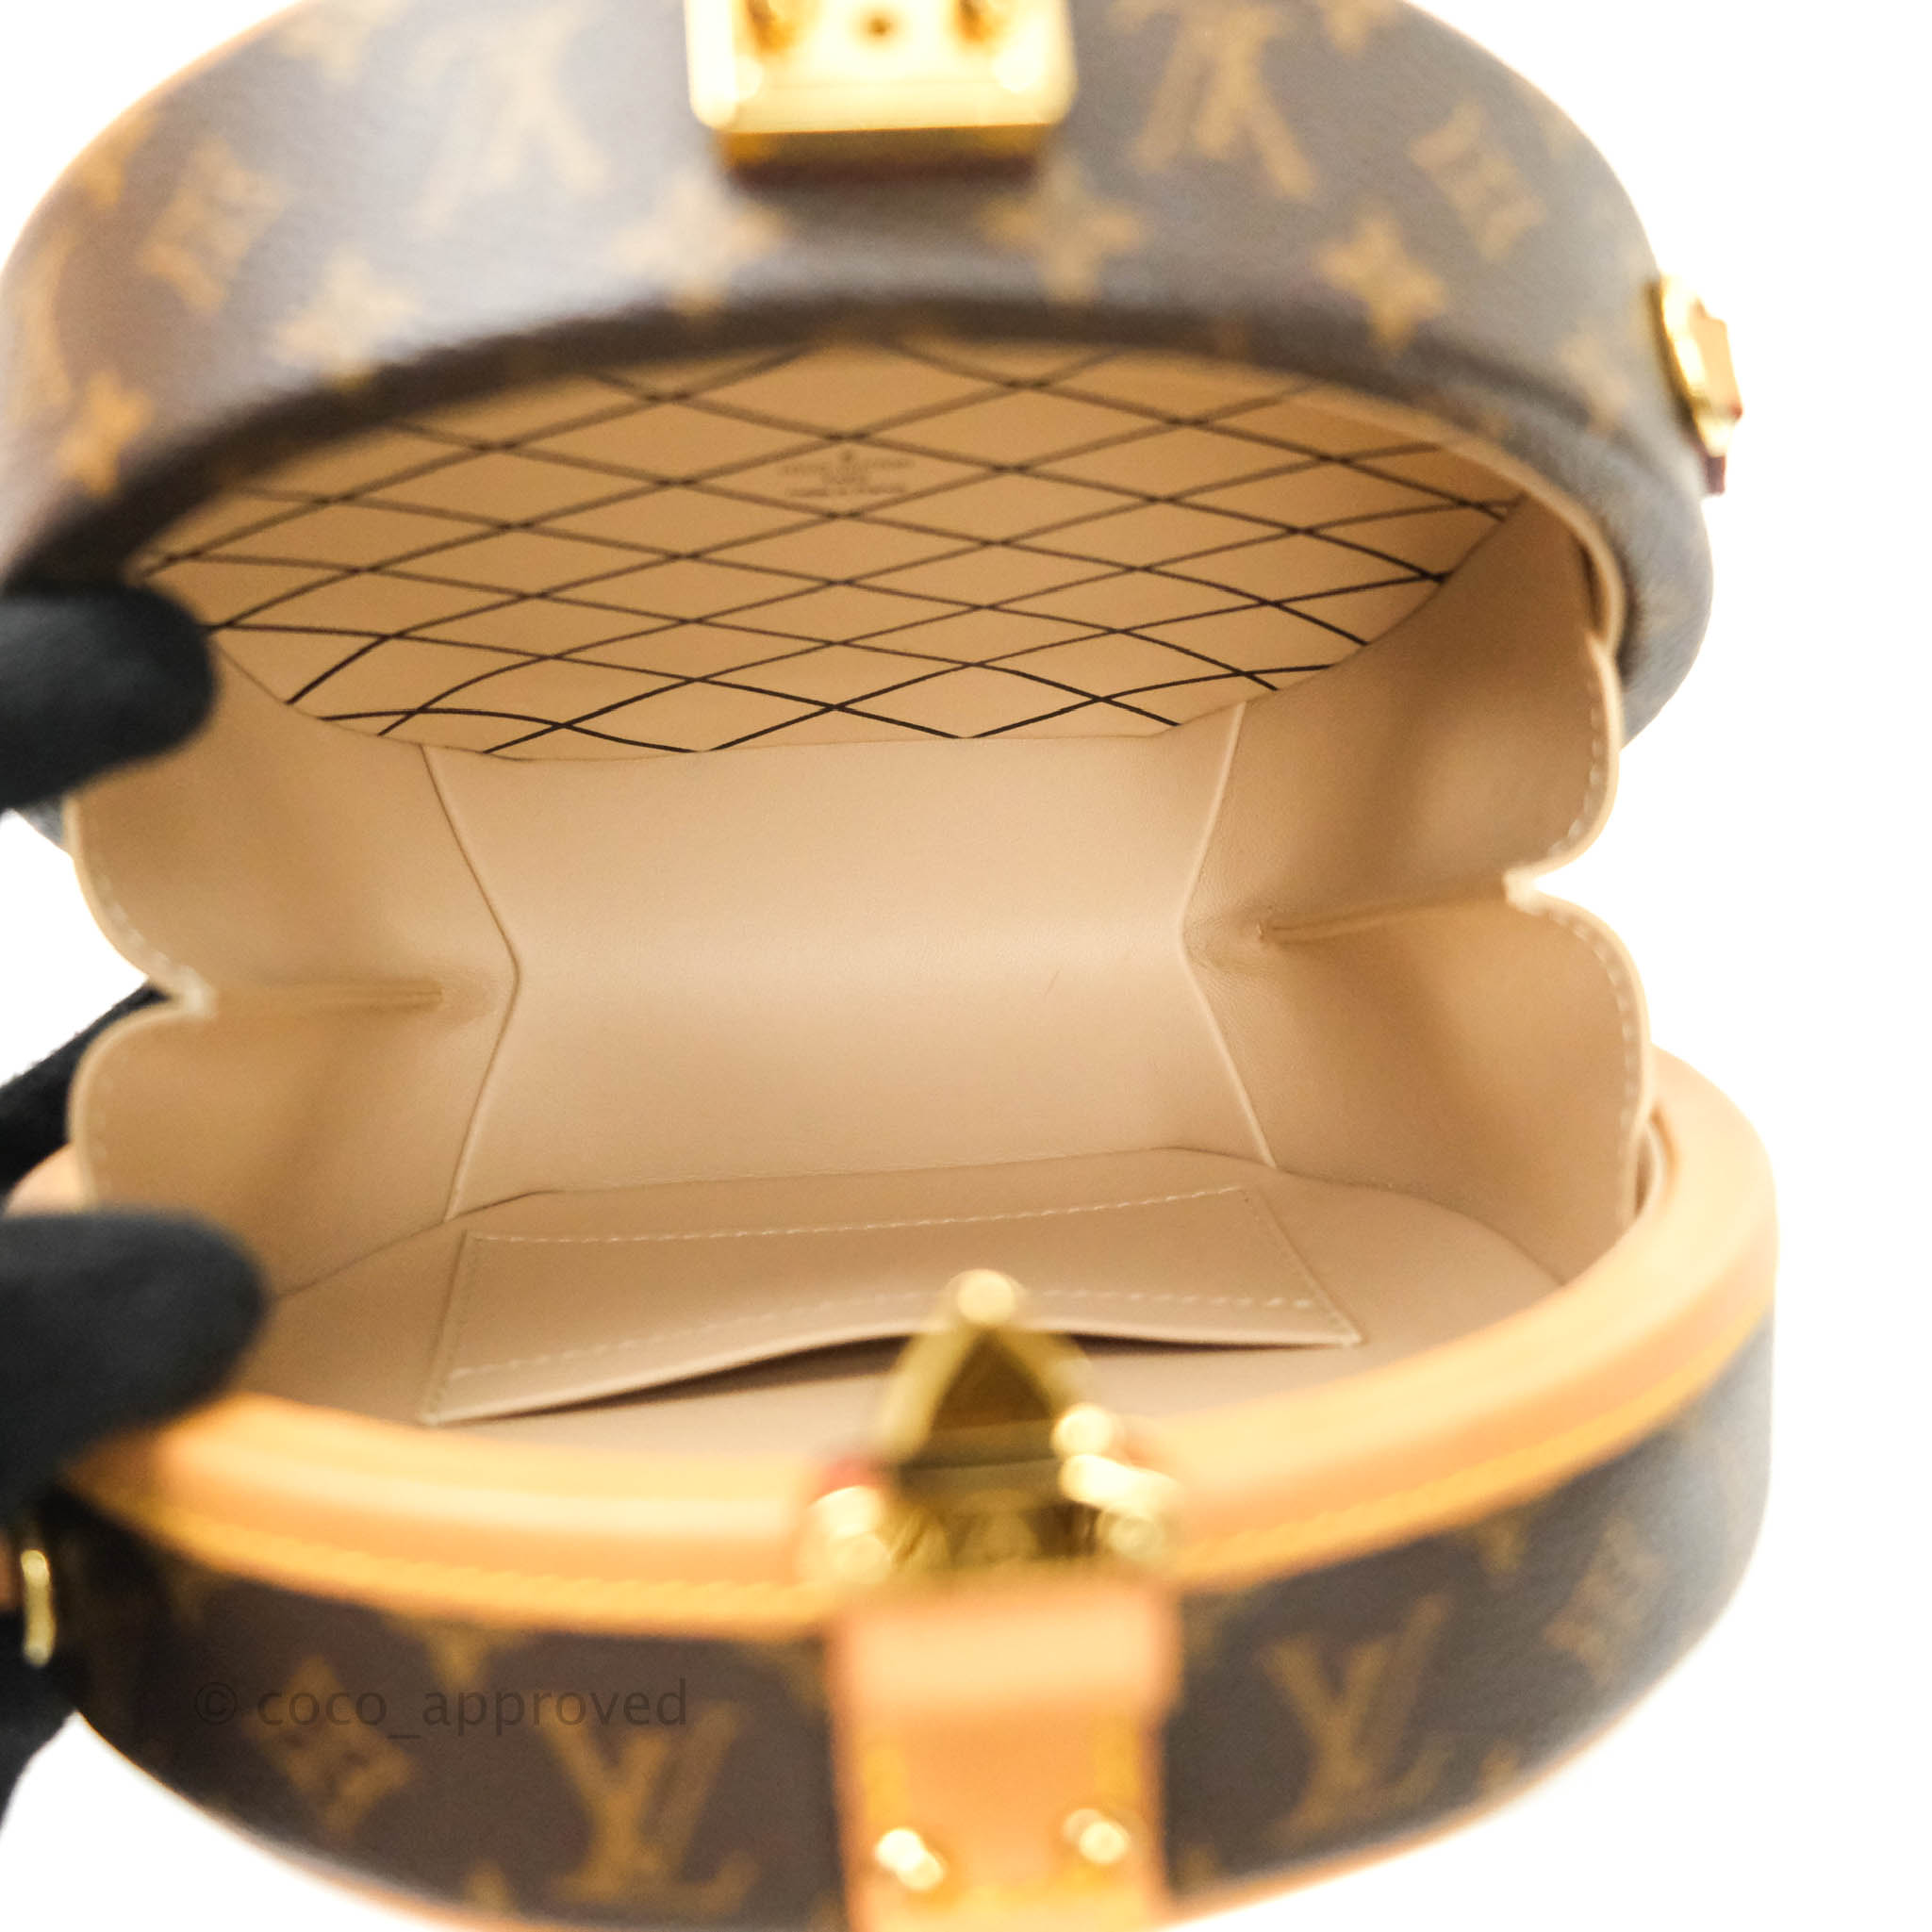 Petite casquette Louis Vuitton!!! - Attention Cournon reprézent!!!